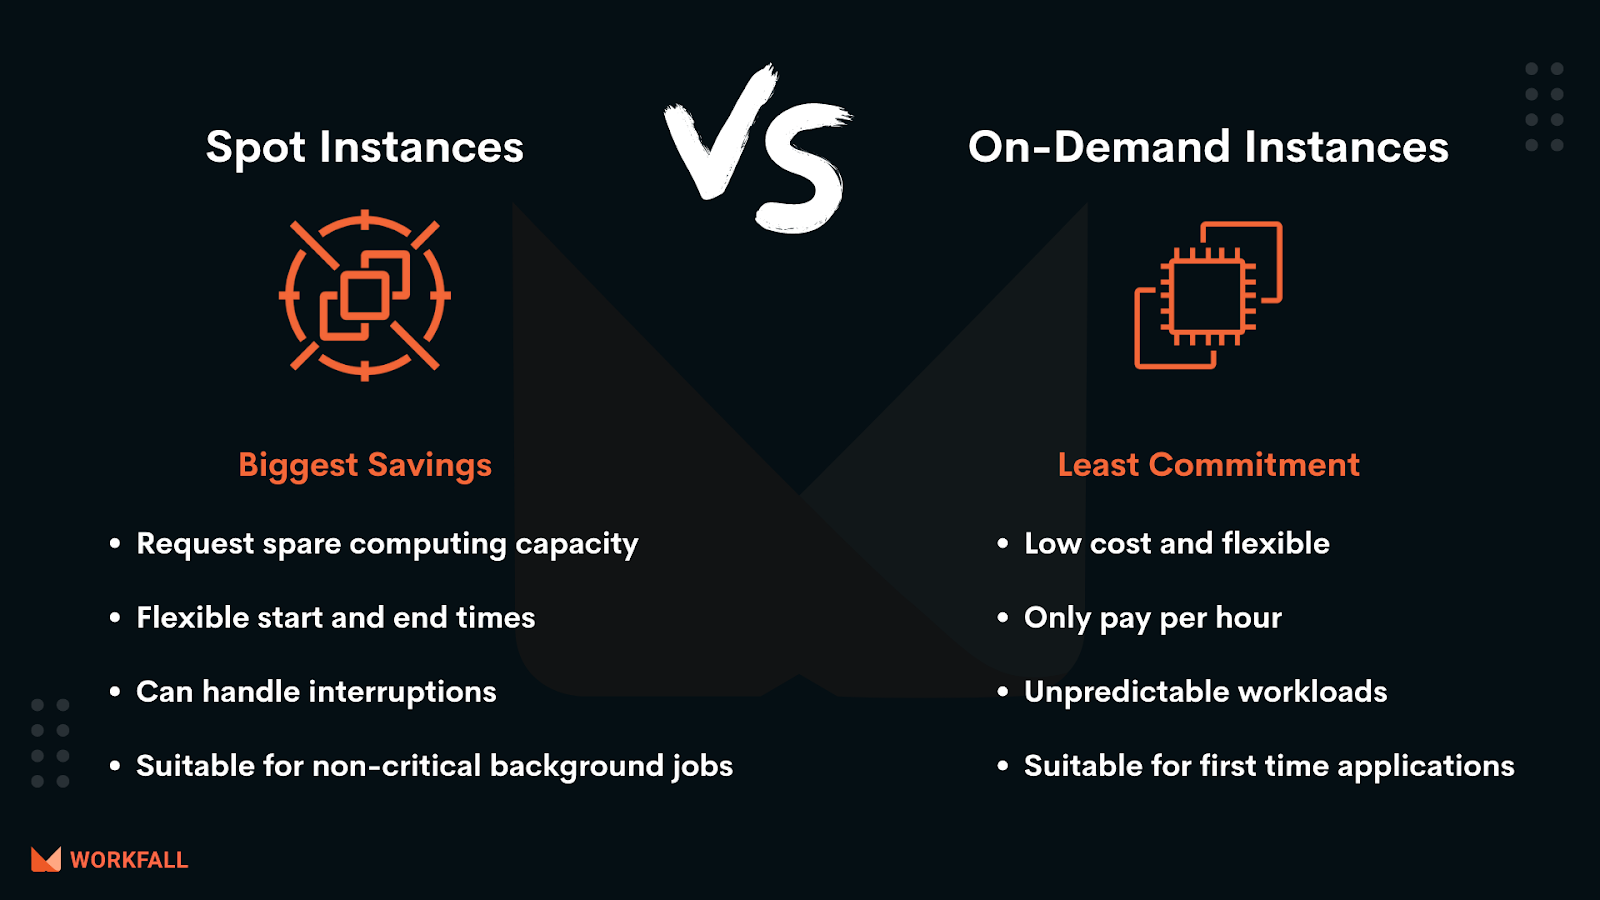 Spot Instances vs On-Demand Instances